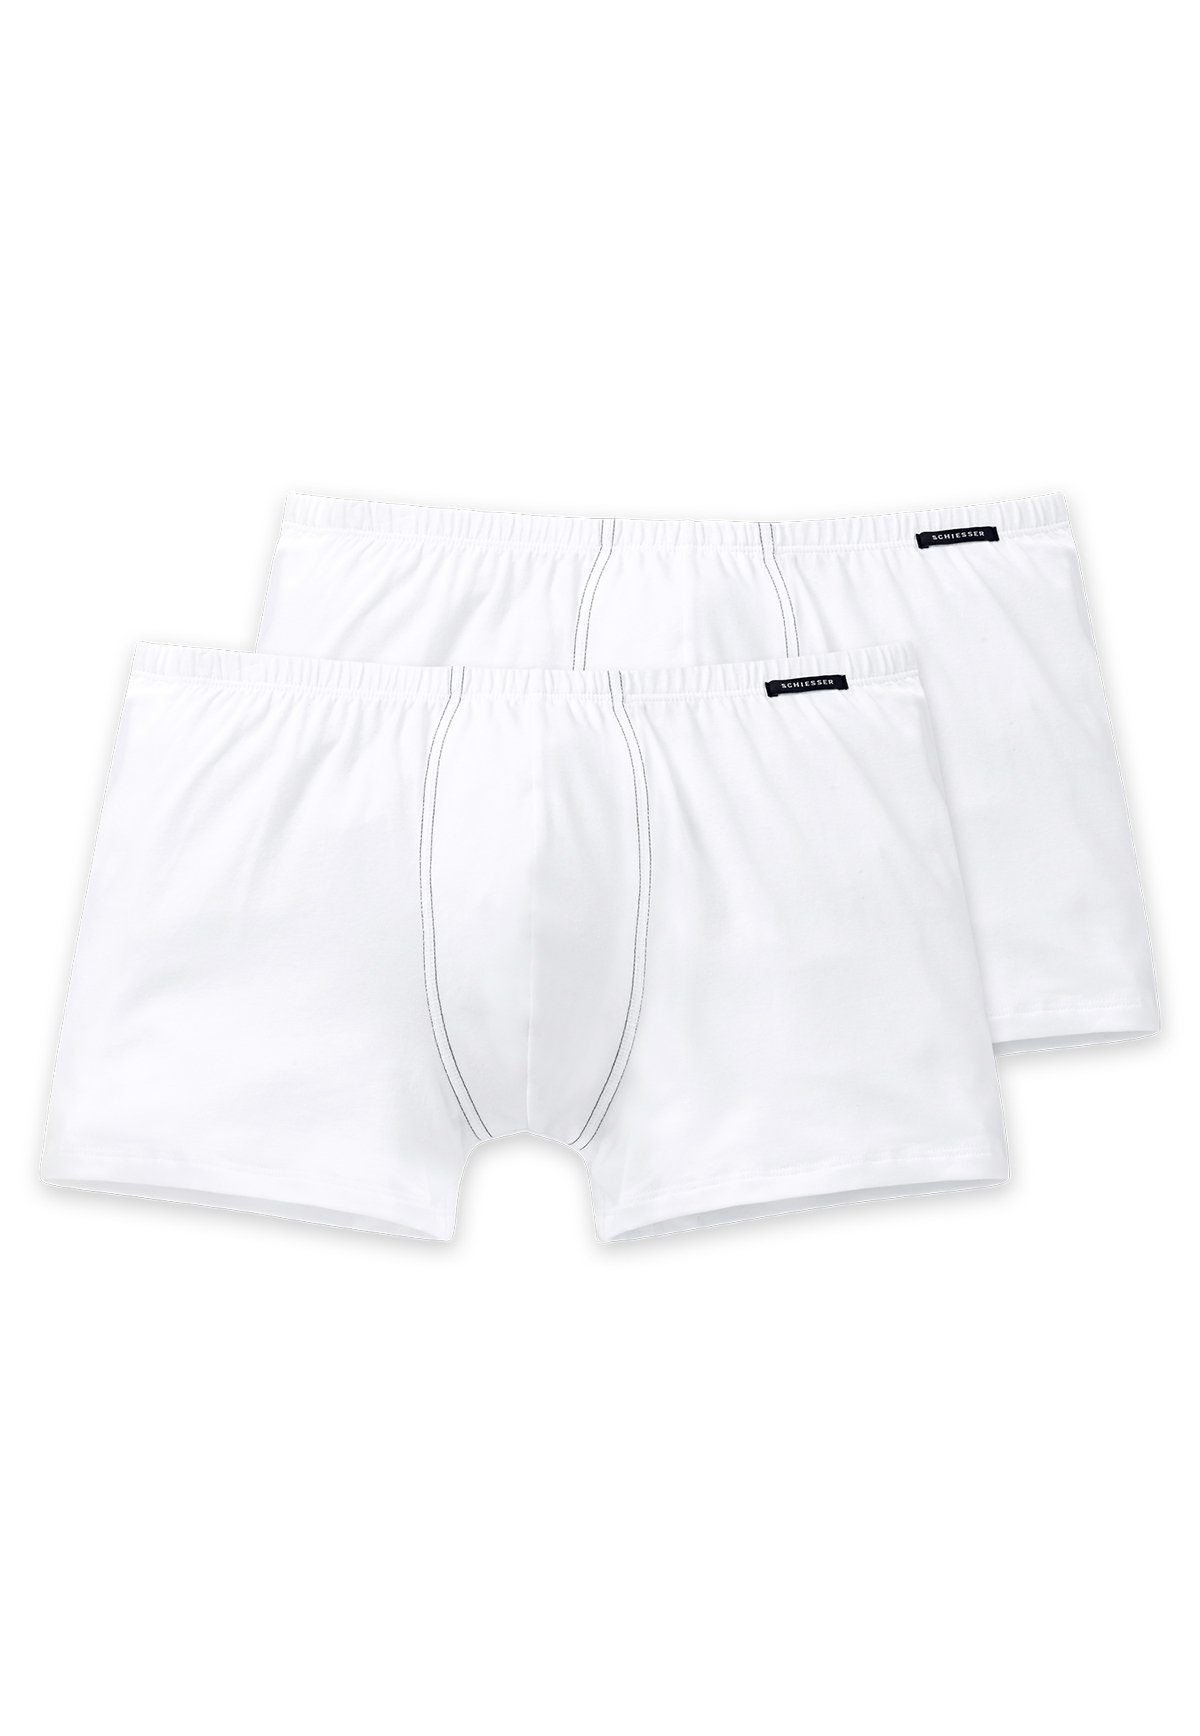 Wäsche/Bademode Boxershorts Schiesser Boxer Herren Shorts 2er Pack - Pants, Boxer, Essentials,